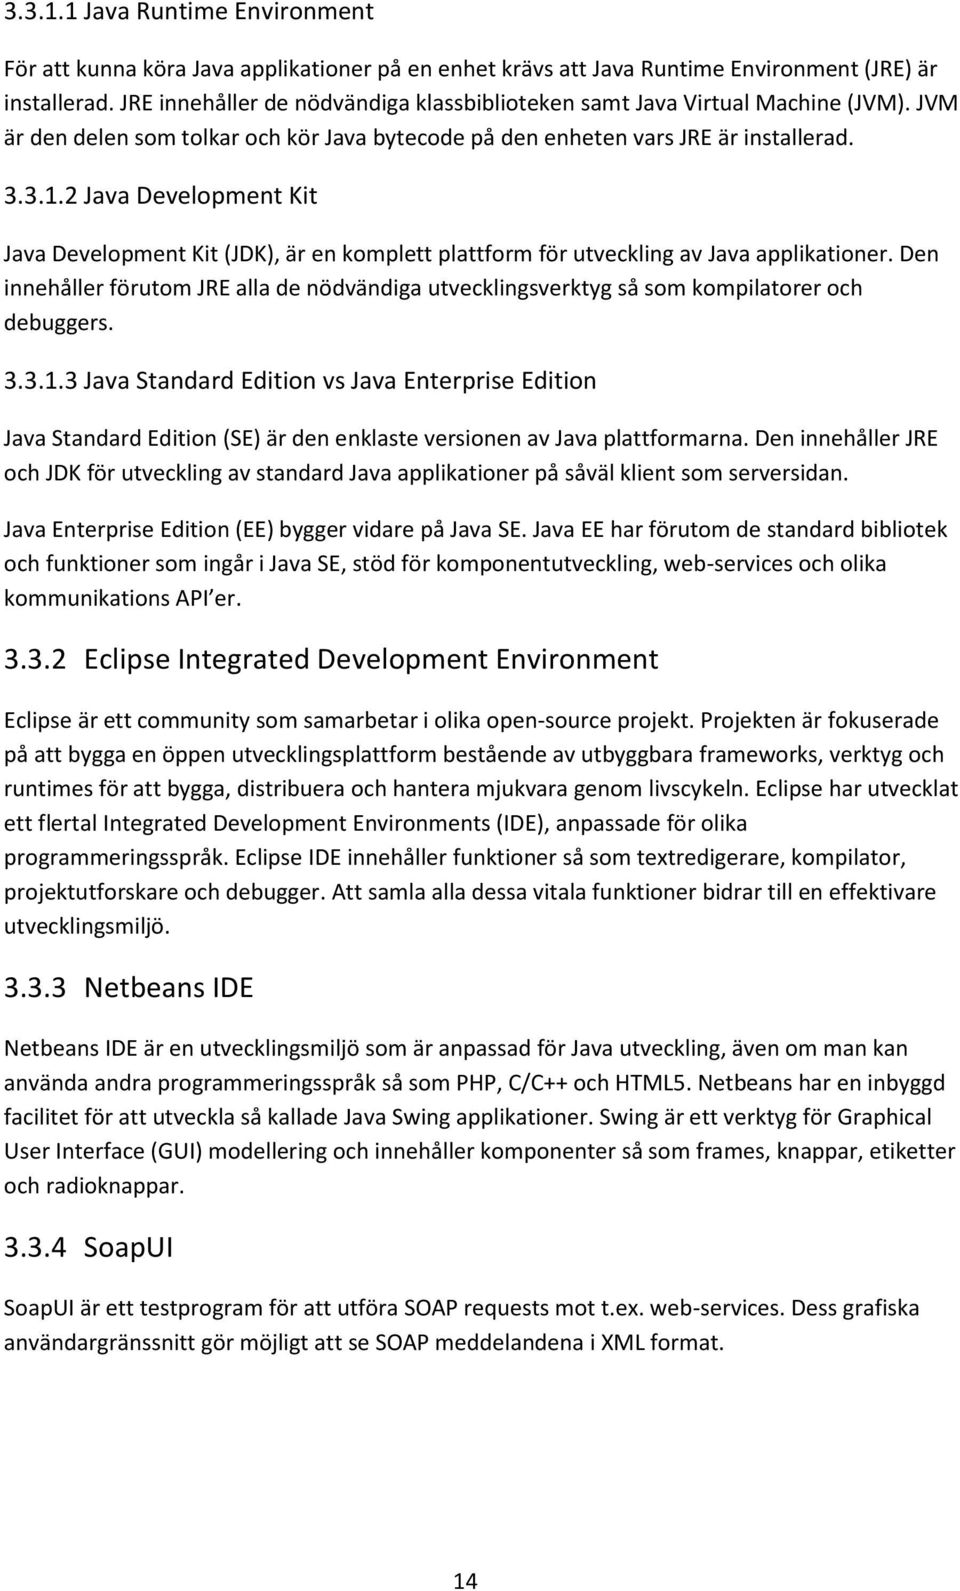 2 Java Development Kit Java Development Kit (JDK), är en komplett plattform för utveckling av Java applikationer.